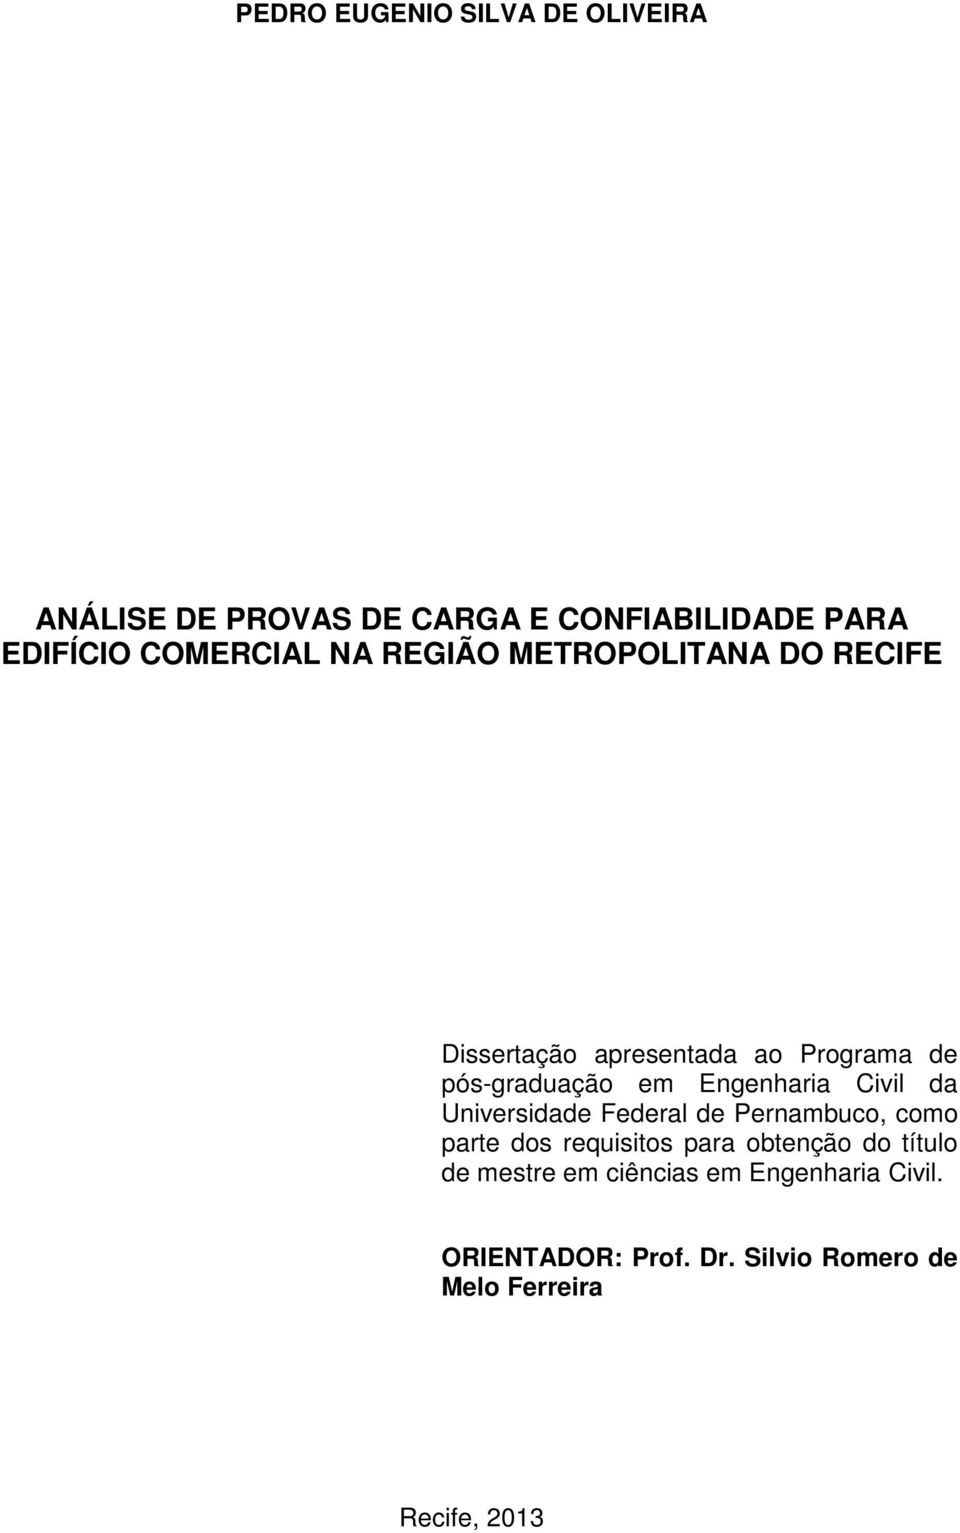 Civil da Universidade Federal de Pernambuco, como parte dos requisitos para obtenção do título de